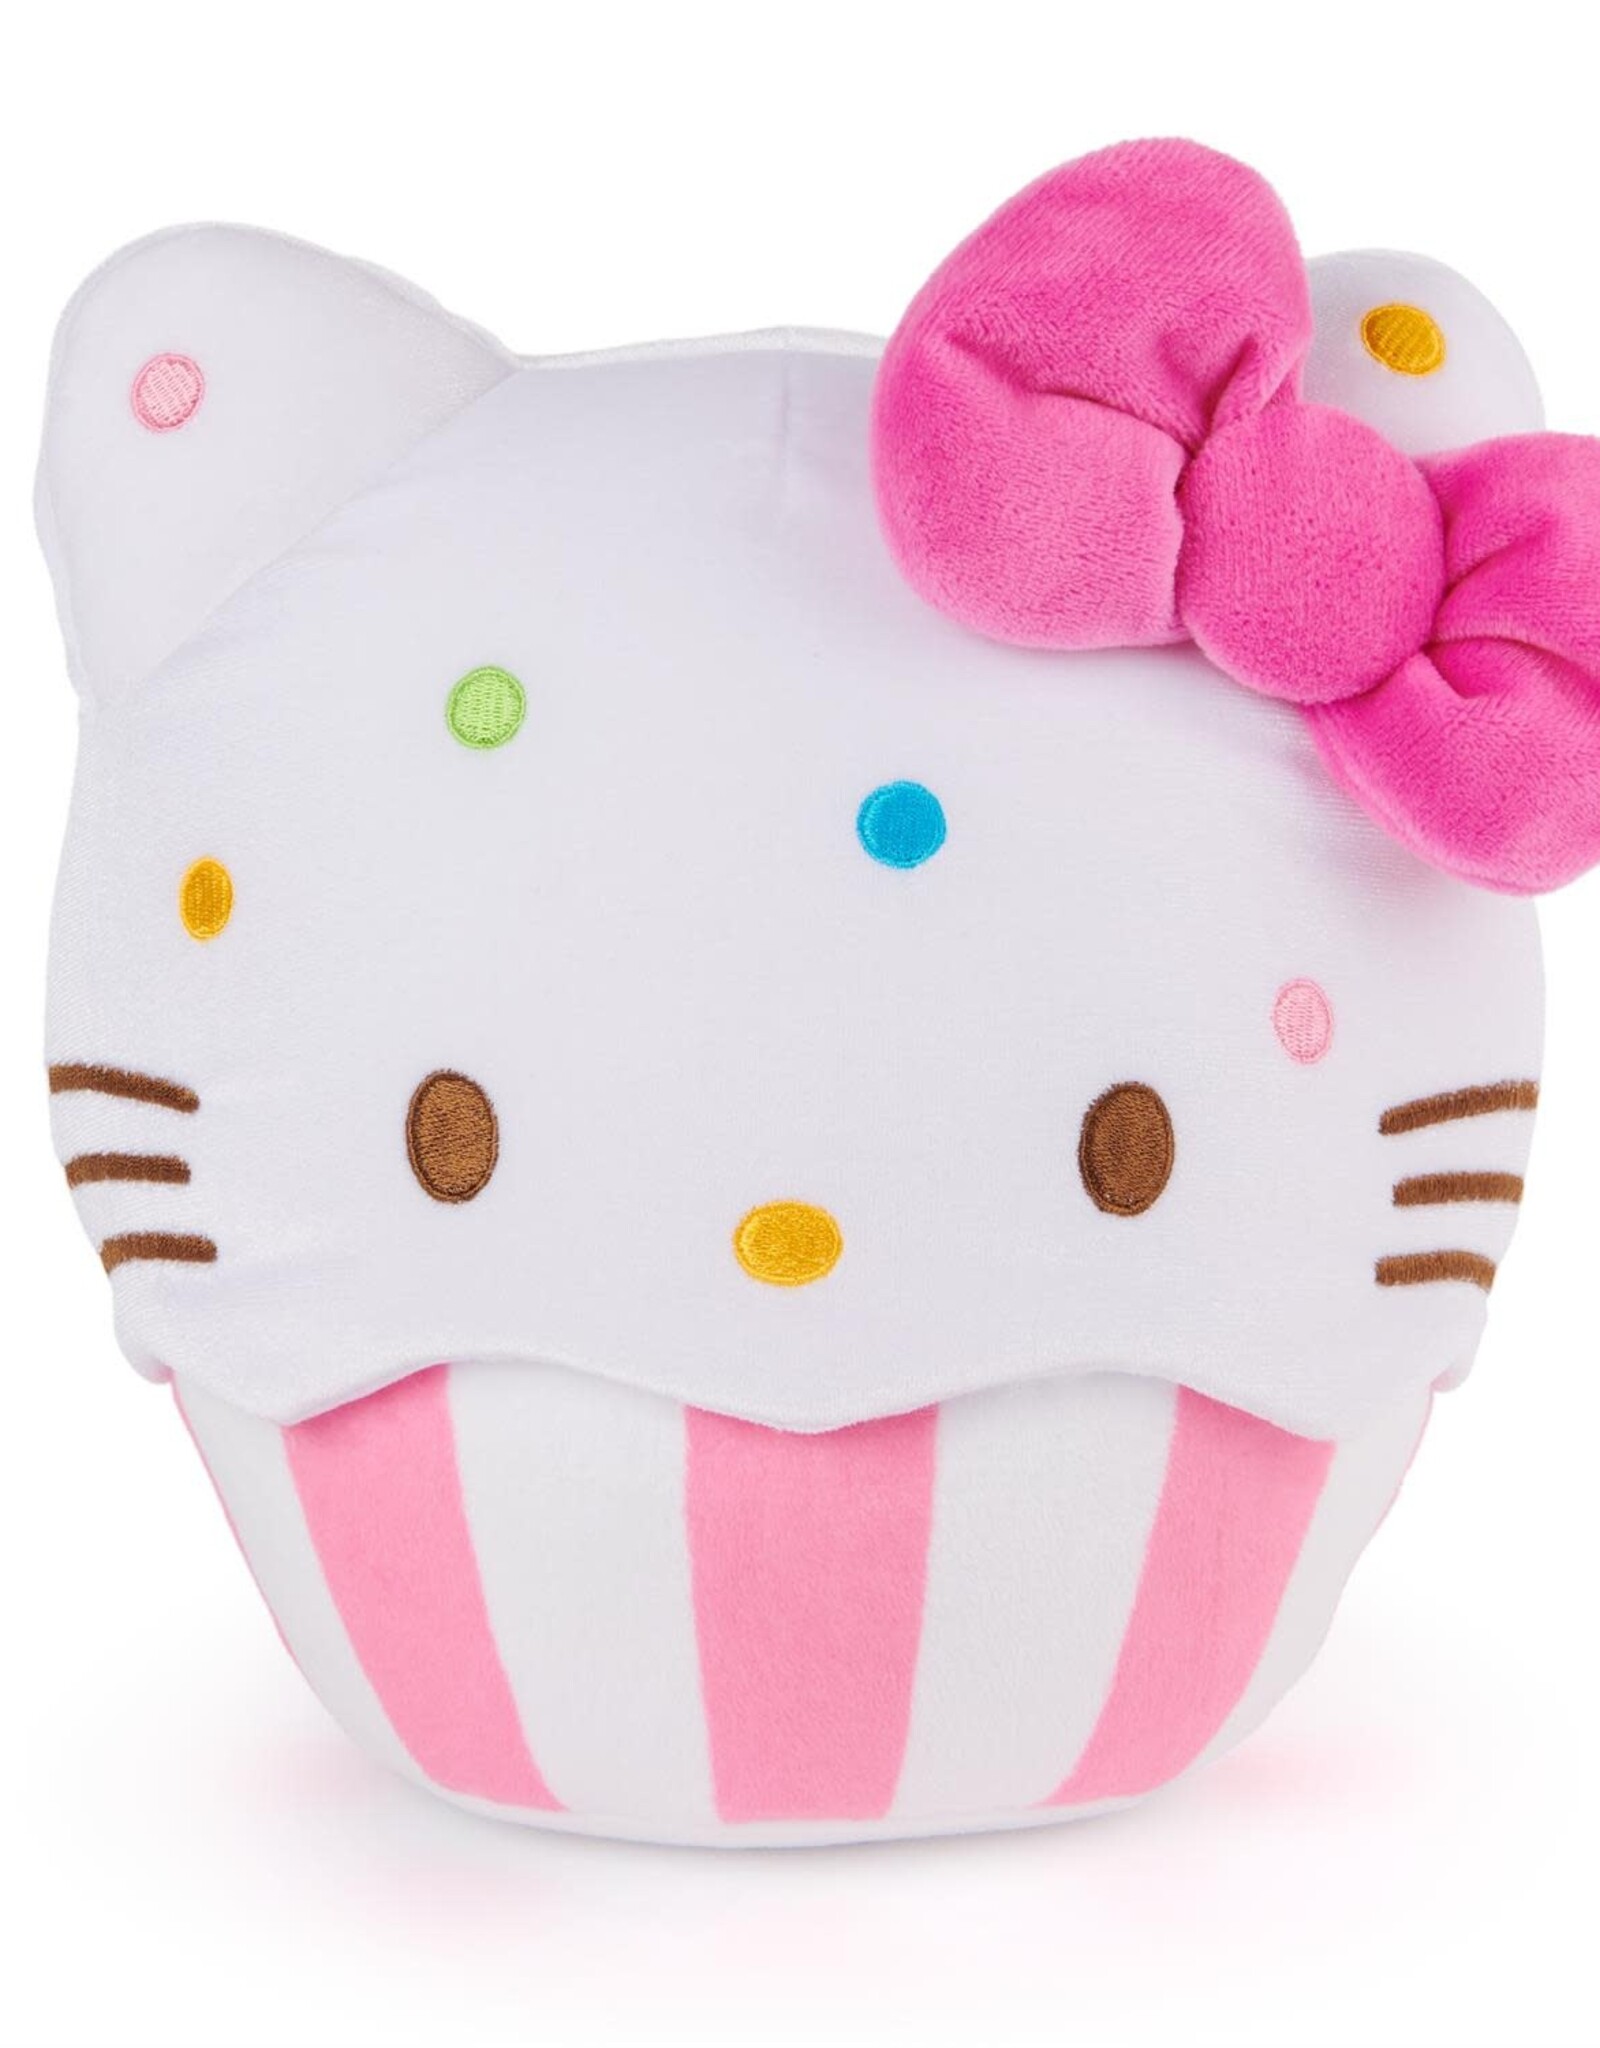 Gund/Spinmaster Hello Kitty Cupcake